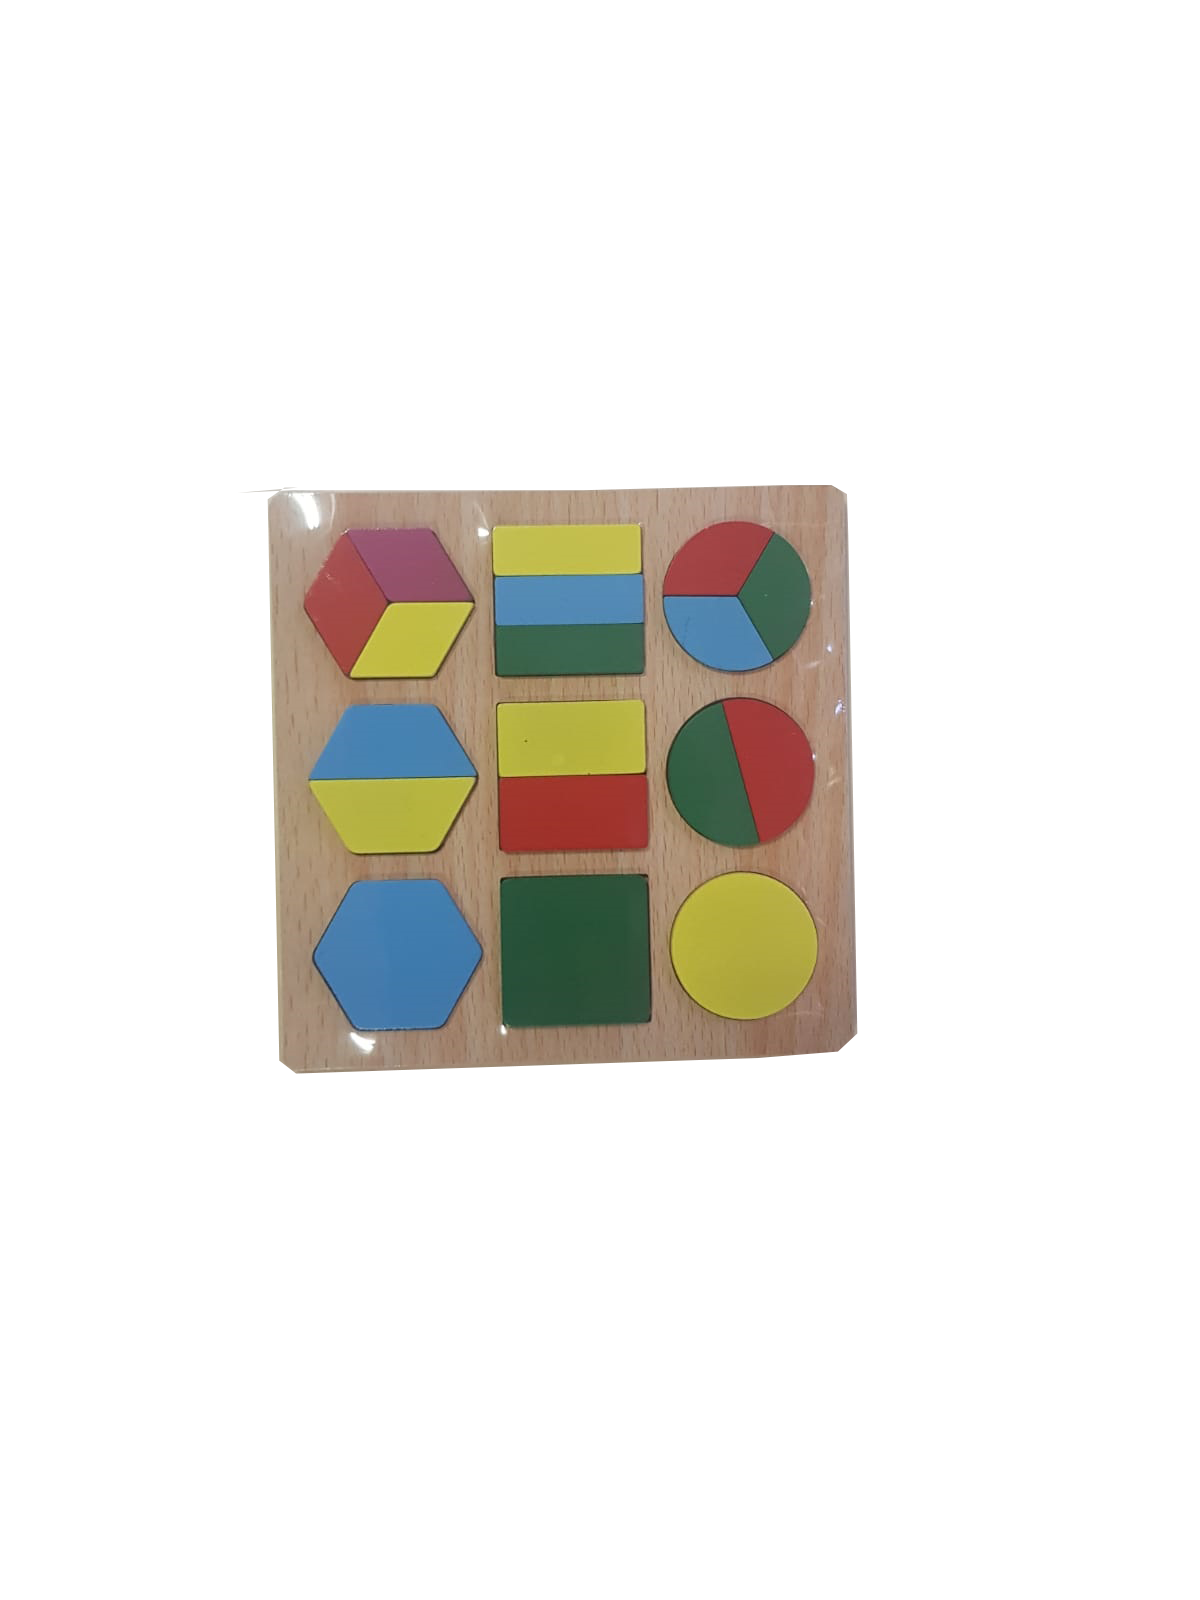 Pachetul contine: Jucarie educativa puzzle din lemn Curcubeu cu piese de diferite dimensiuni, forme si culori, cu ajutorul lor cei mici dar si cei mari, pot realiza diferite forme geometrice .